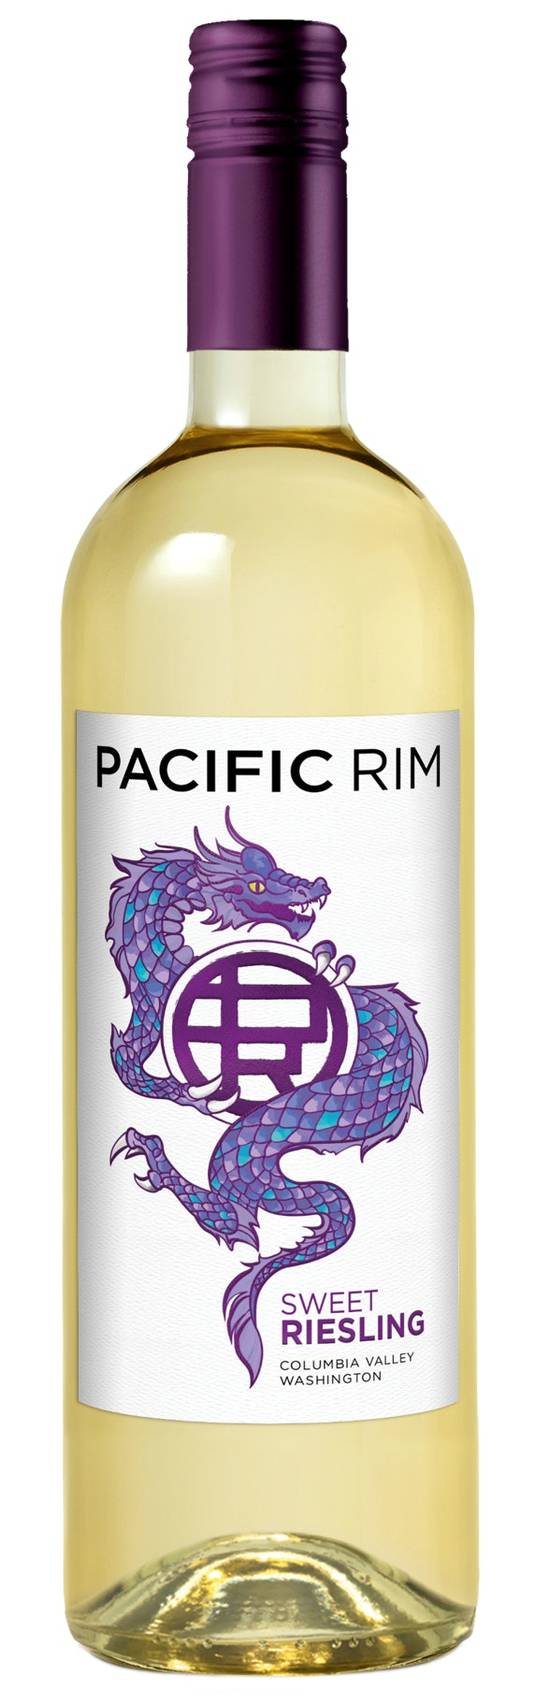 Pacific Rim Sweet Riesling Wine (750 ml)